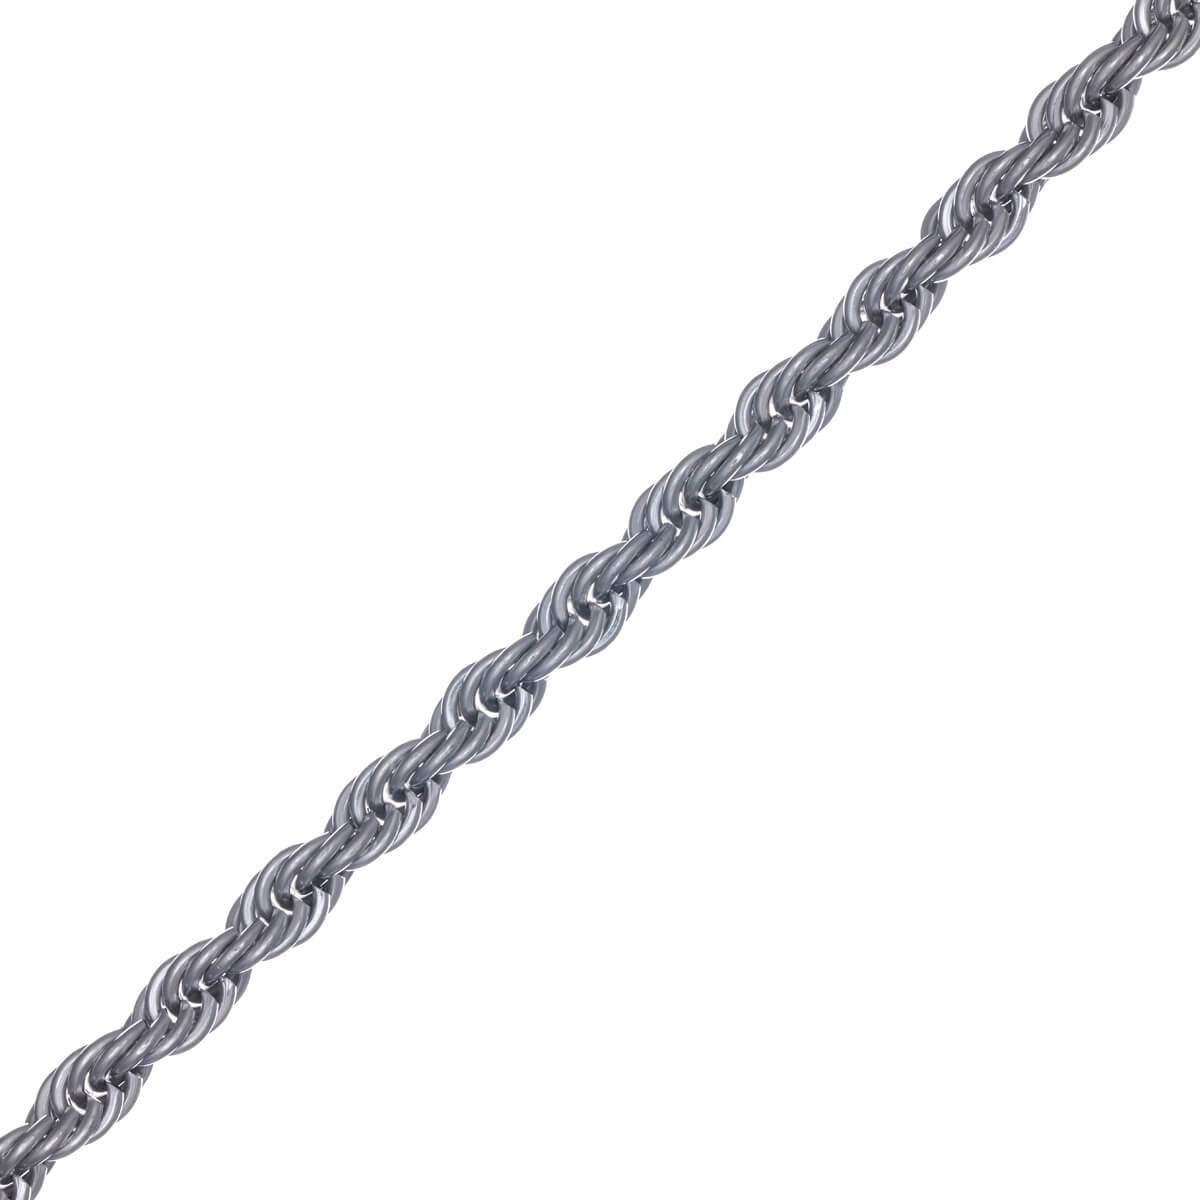 Rope chain steel cordeliaketju necklace 7mm 55cm